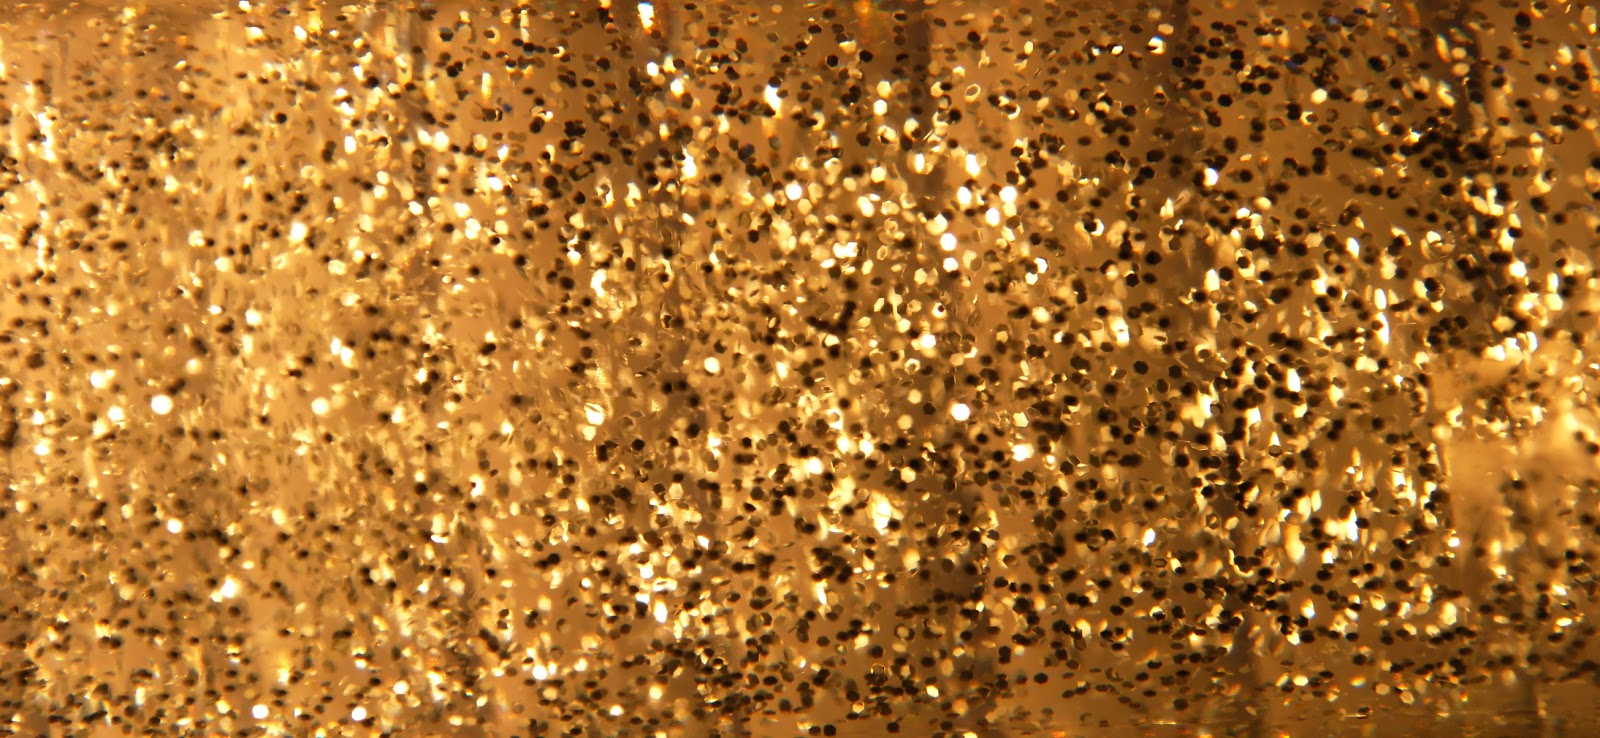 sfondo del desktop d'oro,acqua,luccichio,oro,far cadere,metallo